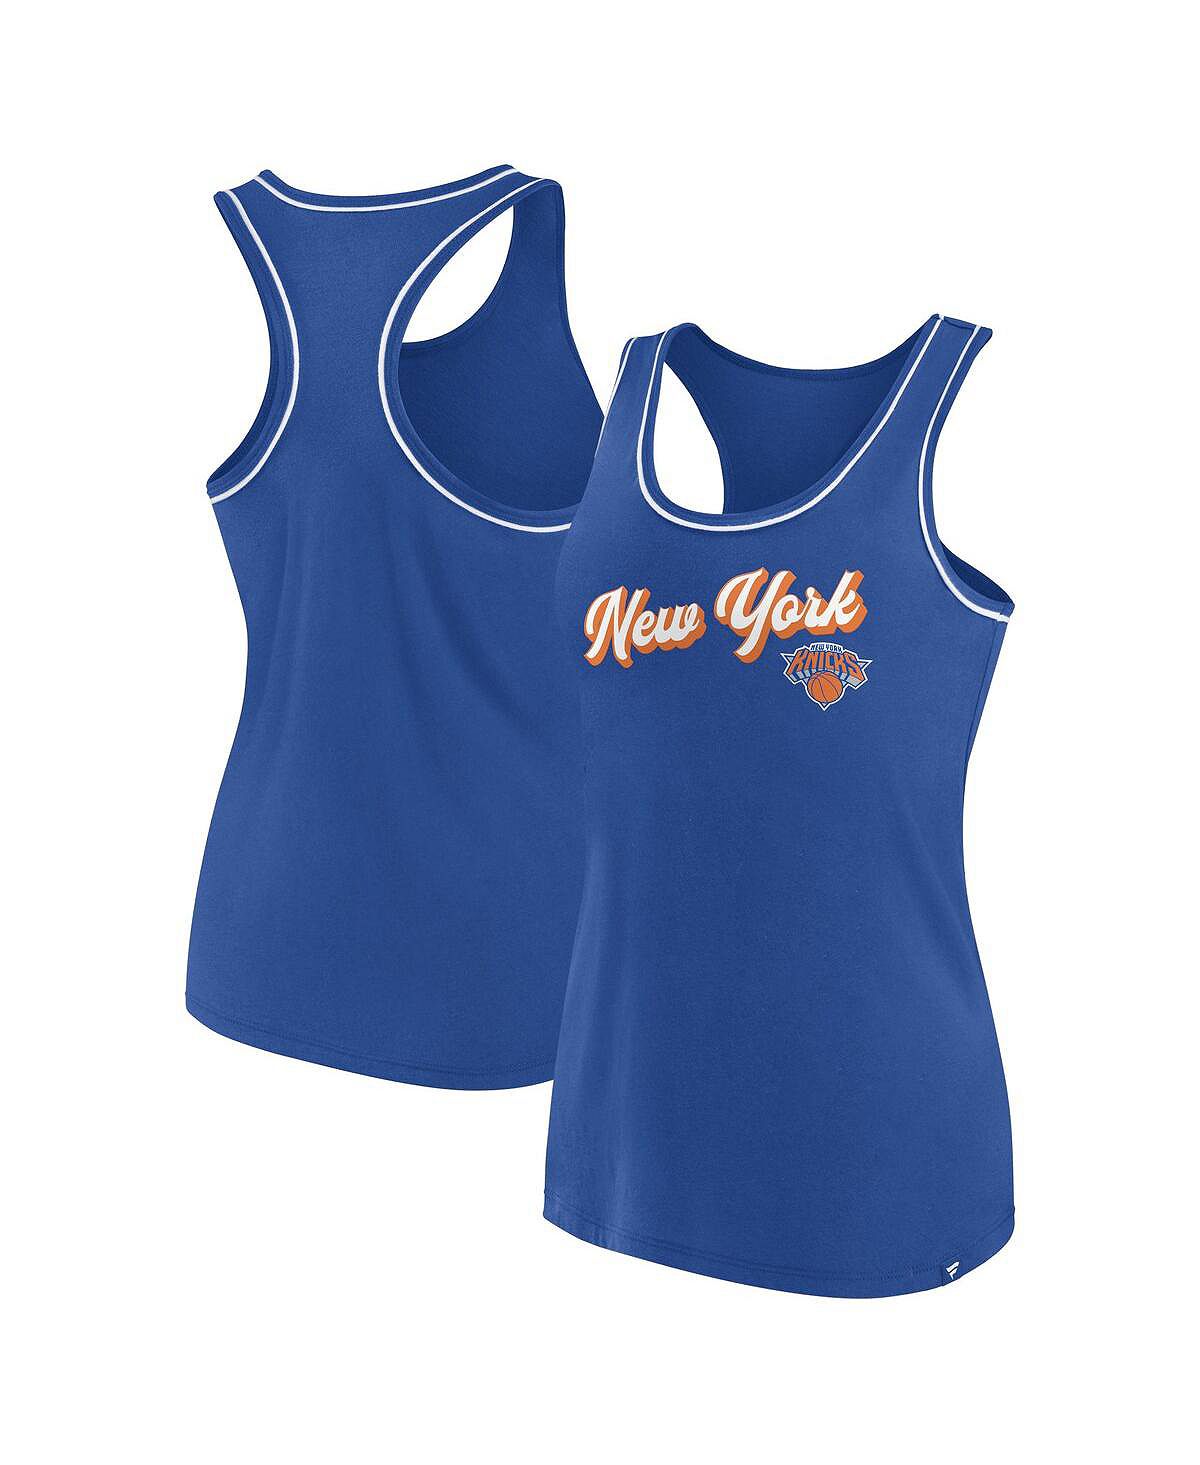 цена Женская синяя майка с фирменным логотипом New York Knicks и логотипом Racerback Fanatics, синий